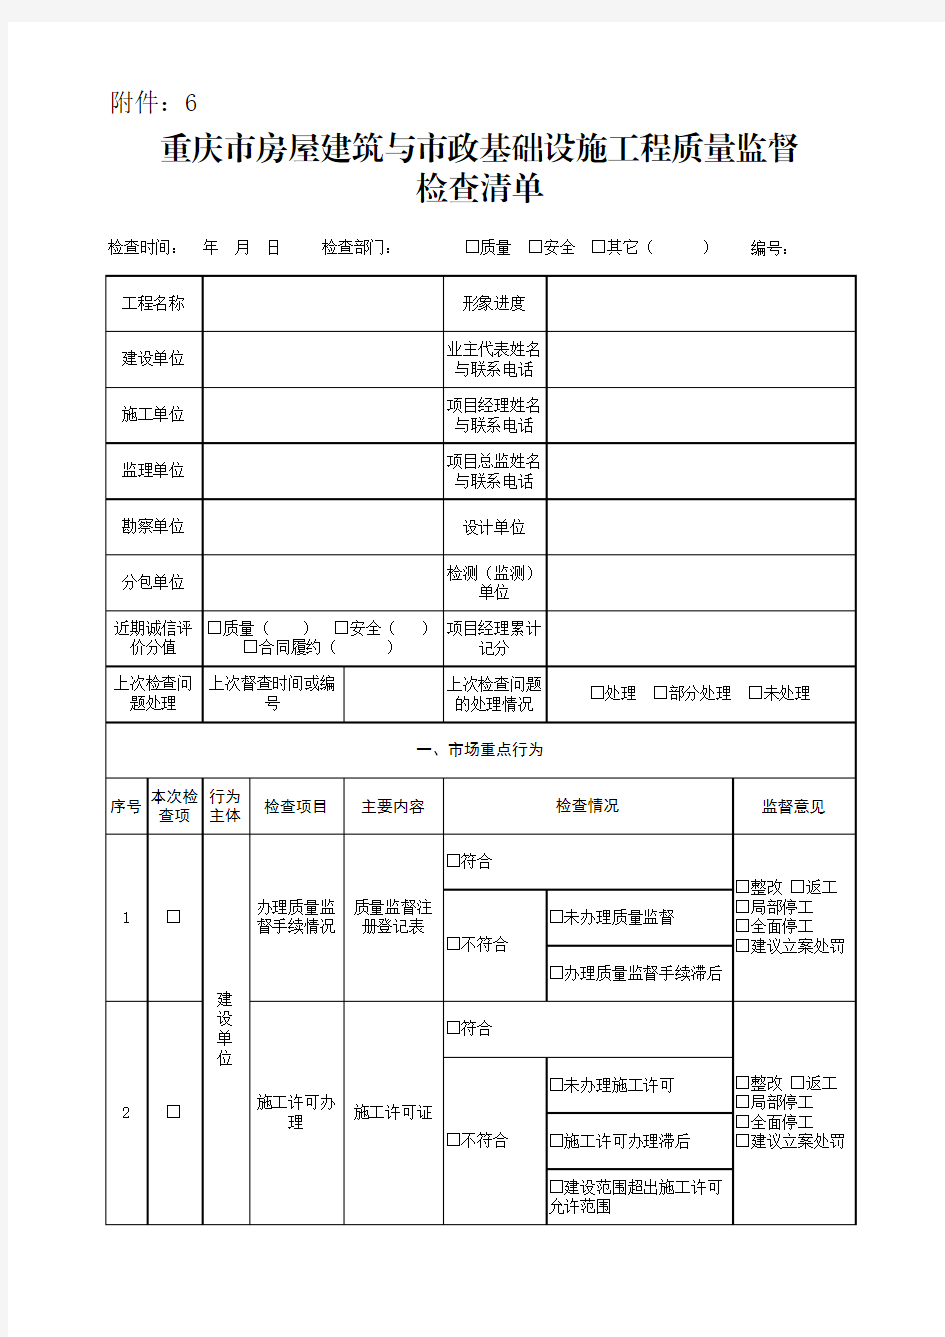 重庆市房屋建筑与市政基础设施工程质量监督检查清单